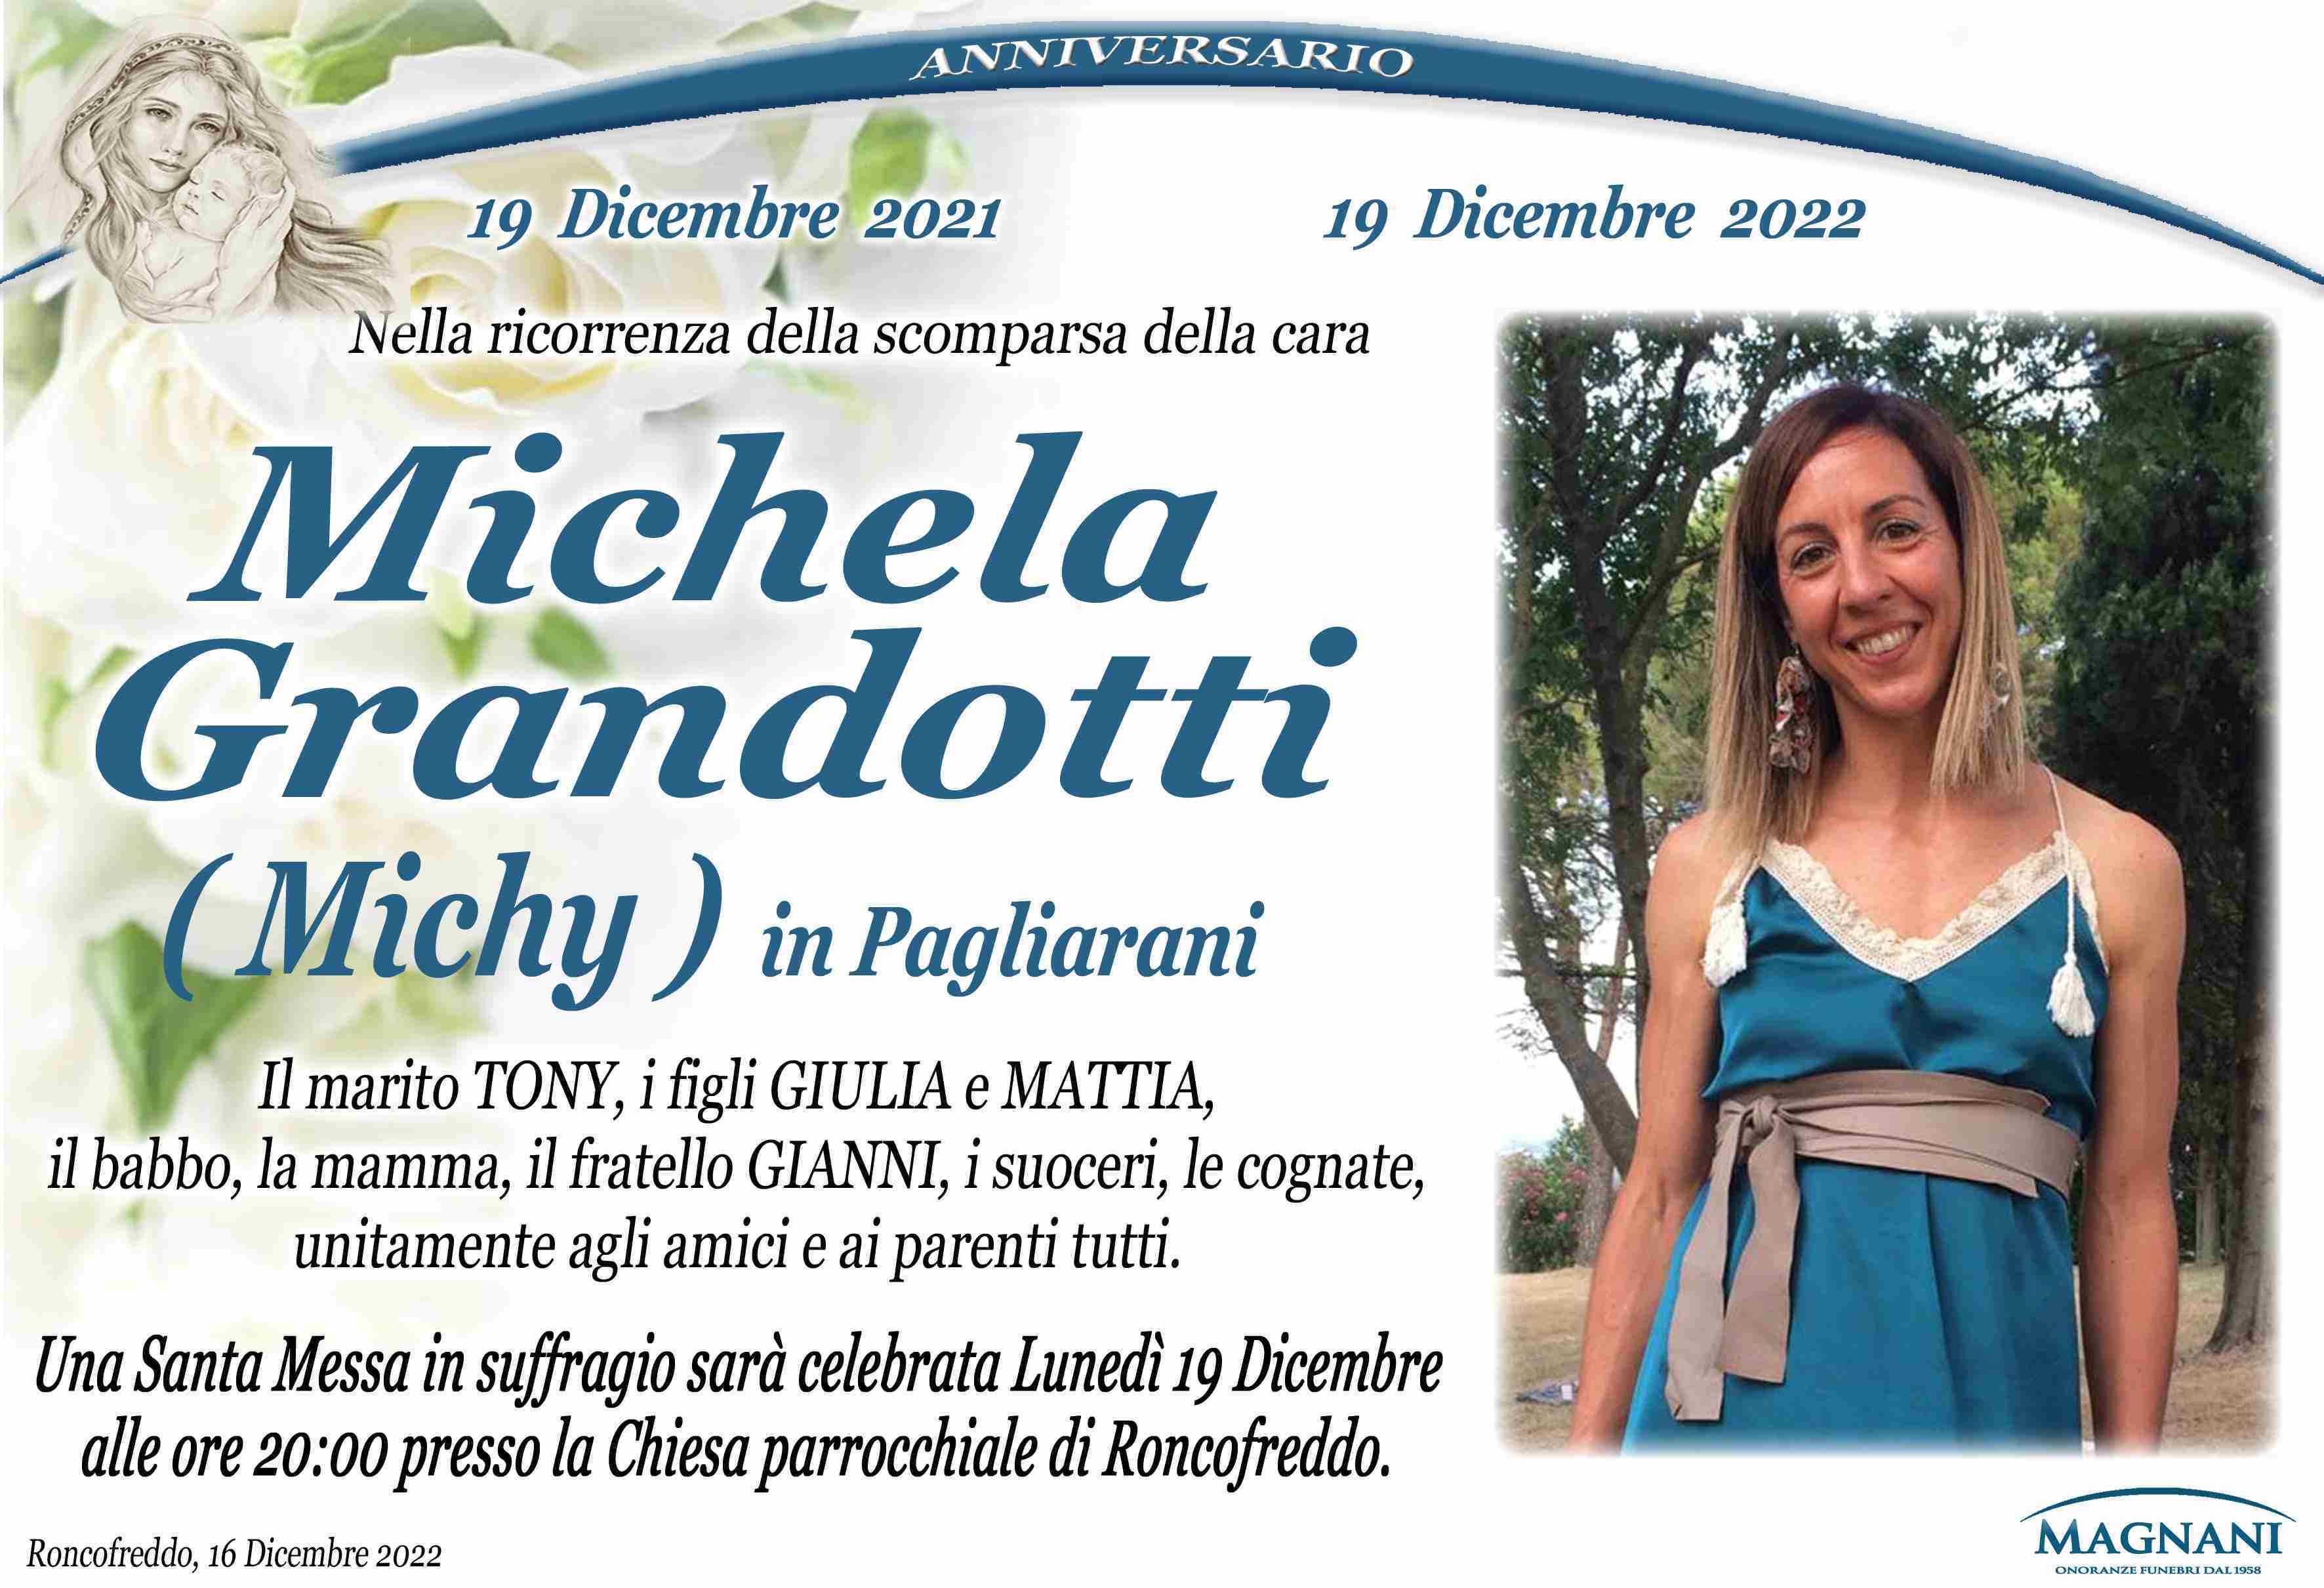 Michela Grandotti